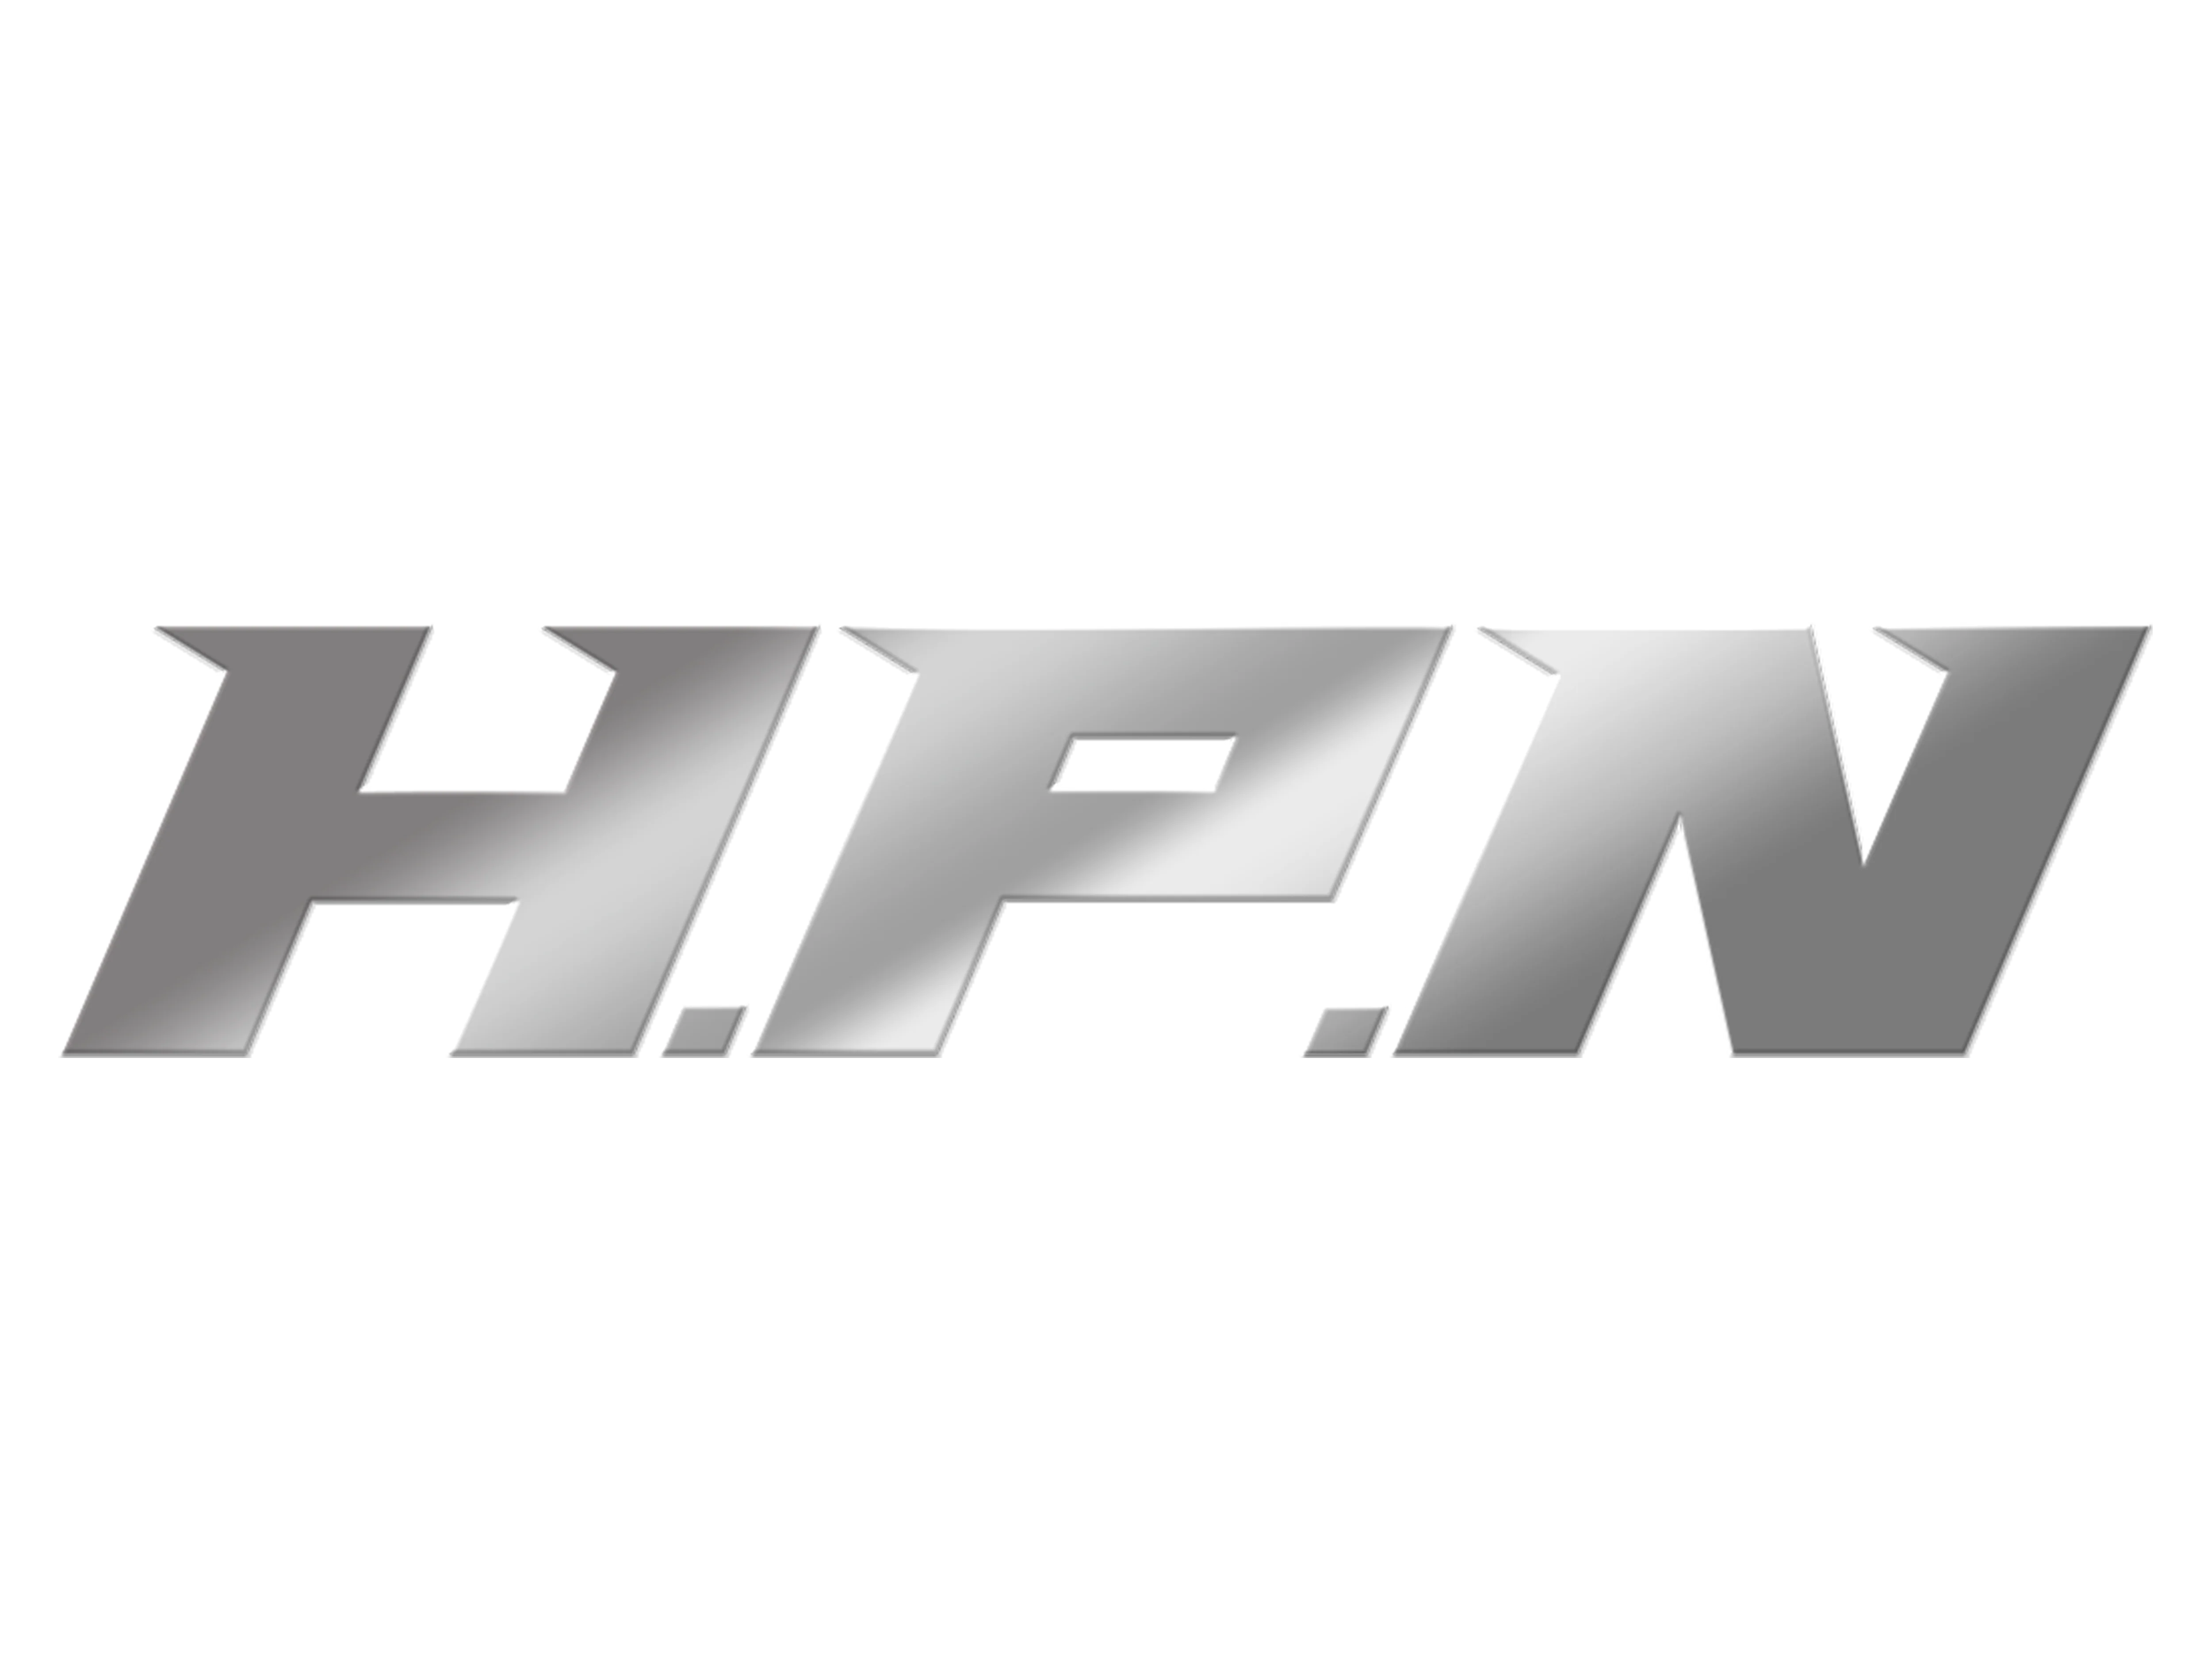 H.P.N GmbH